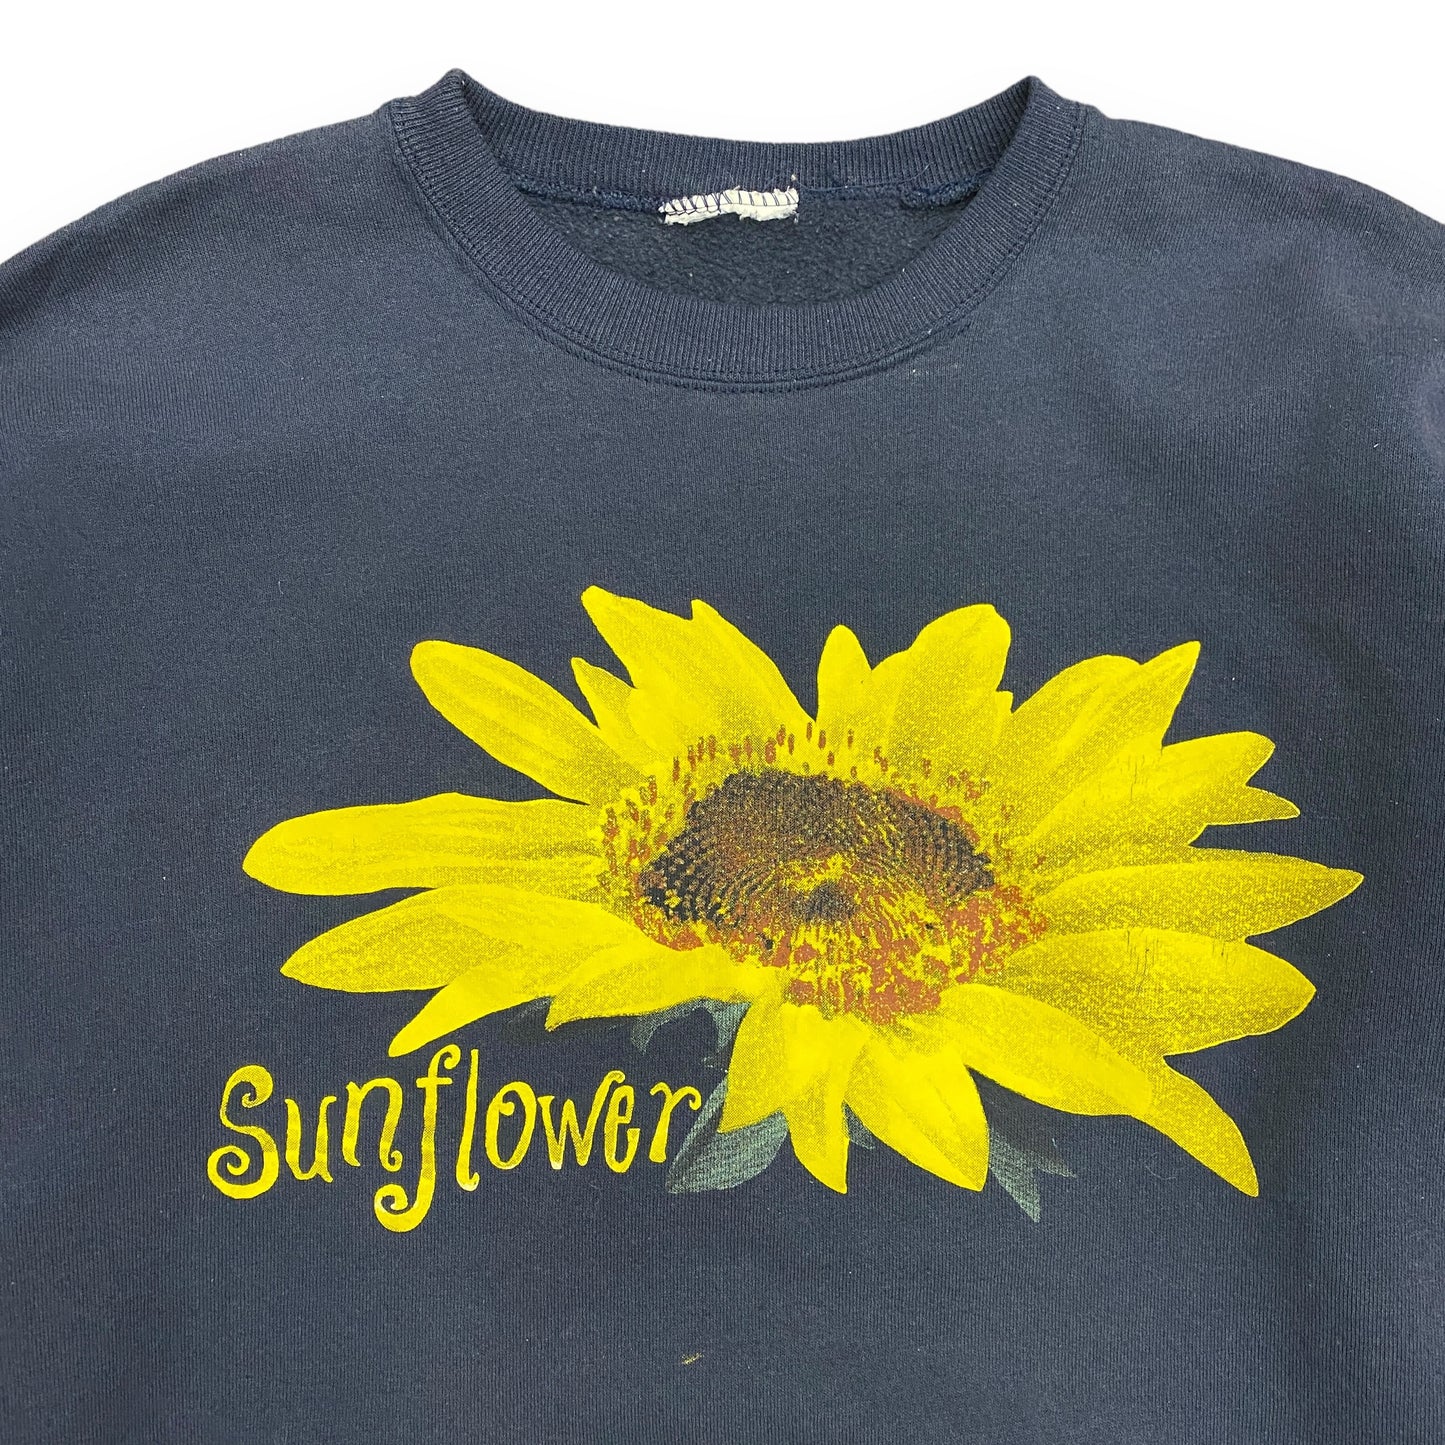 90s Sunflower Crewneck Sweatshirt - Size Large